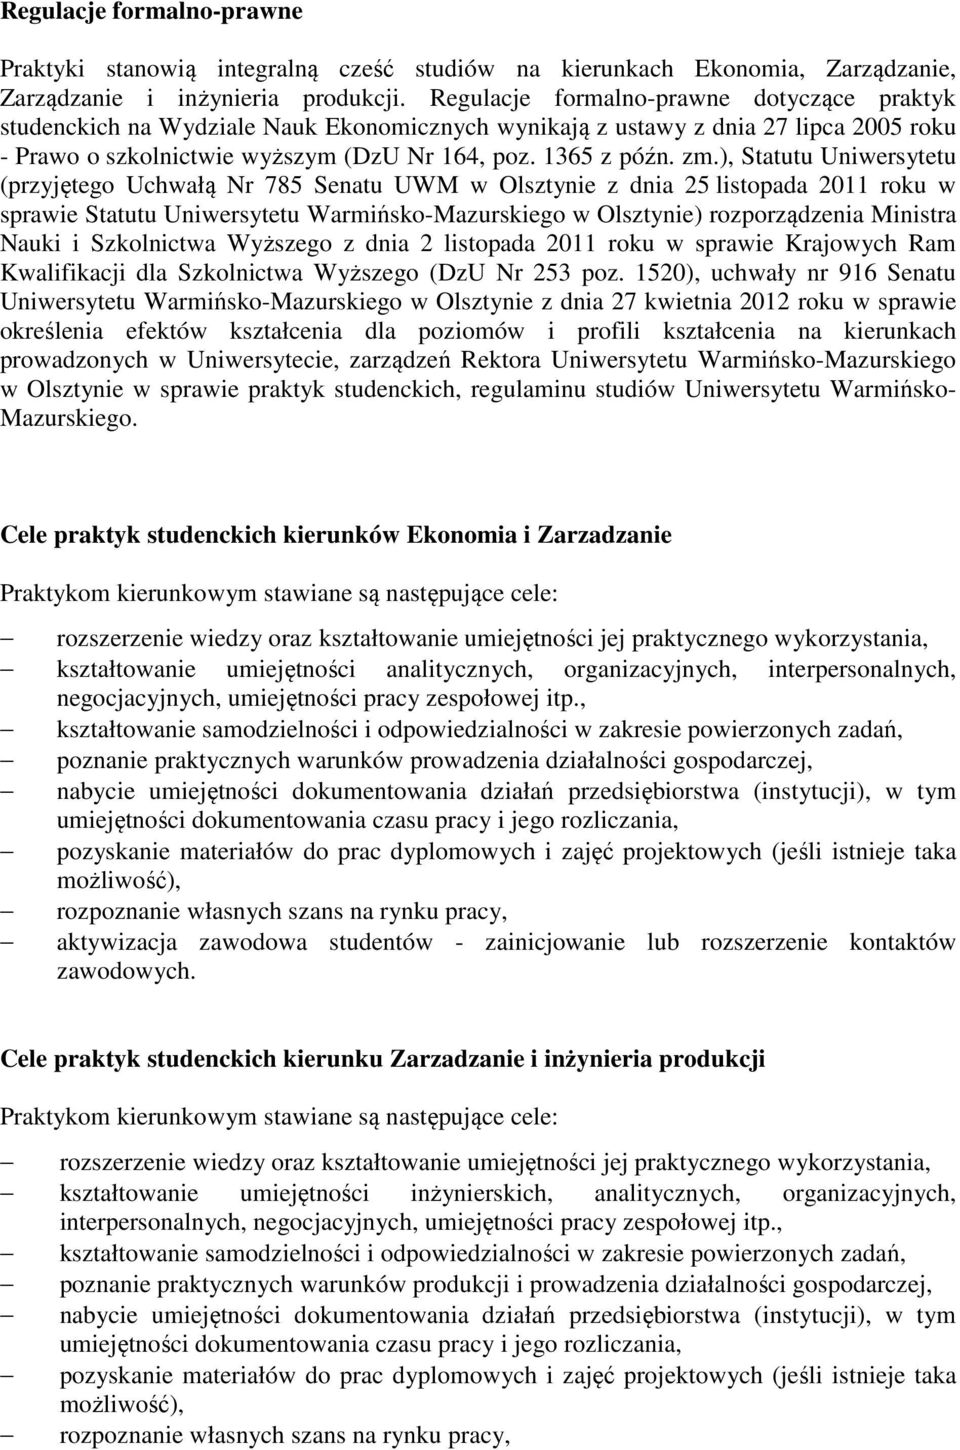 ), Statutu Uniwersytetu (przyjętego Uchwałą Nr 785 Senatu UWM w Olsztynie z dnia 25 listopada 2011 roku w sprawie Statutu Uniwersytetu Warmińsko-Mazurskiego w Olsztynie) rozporządzenia Ministra Nauki